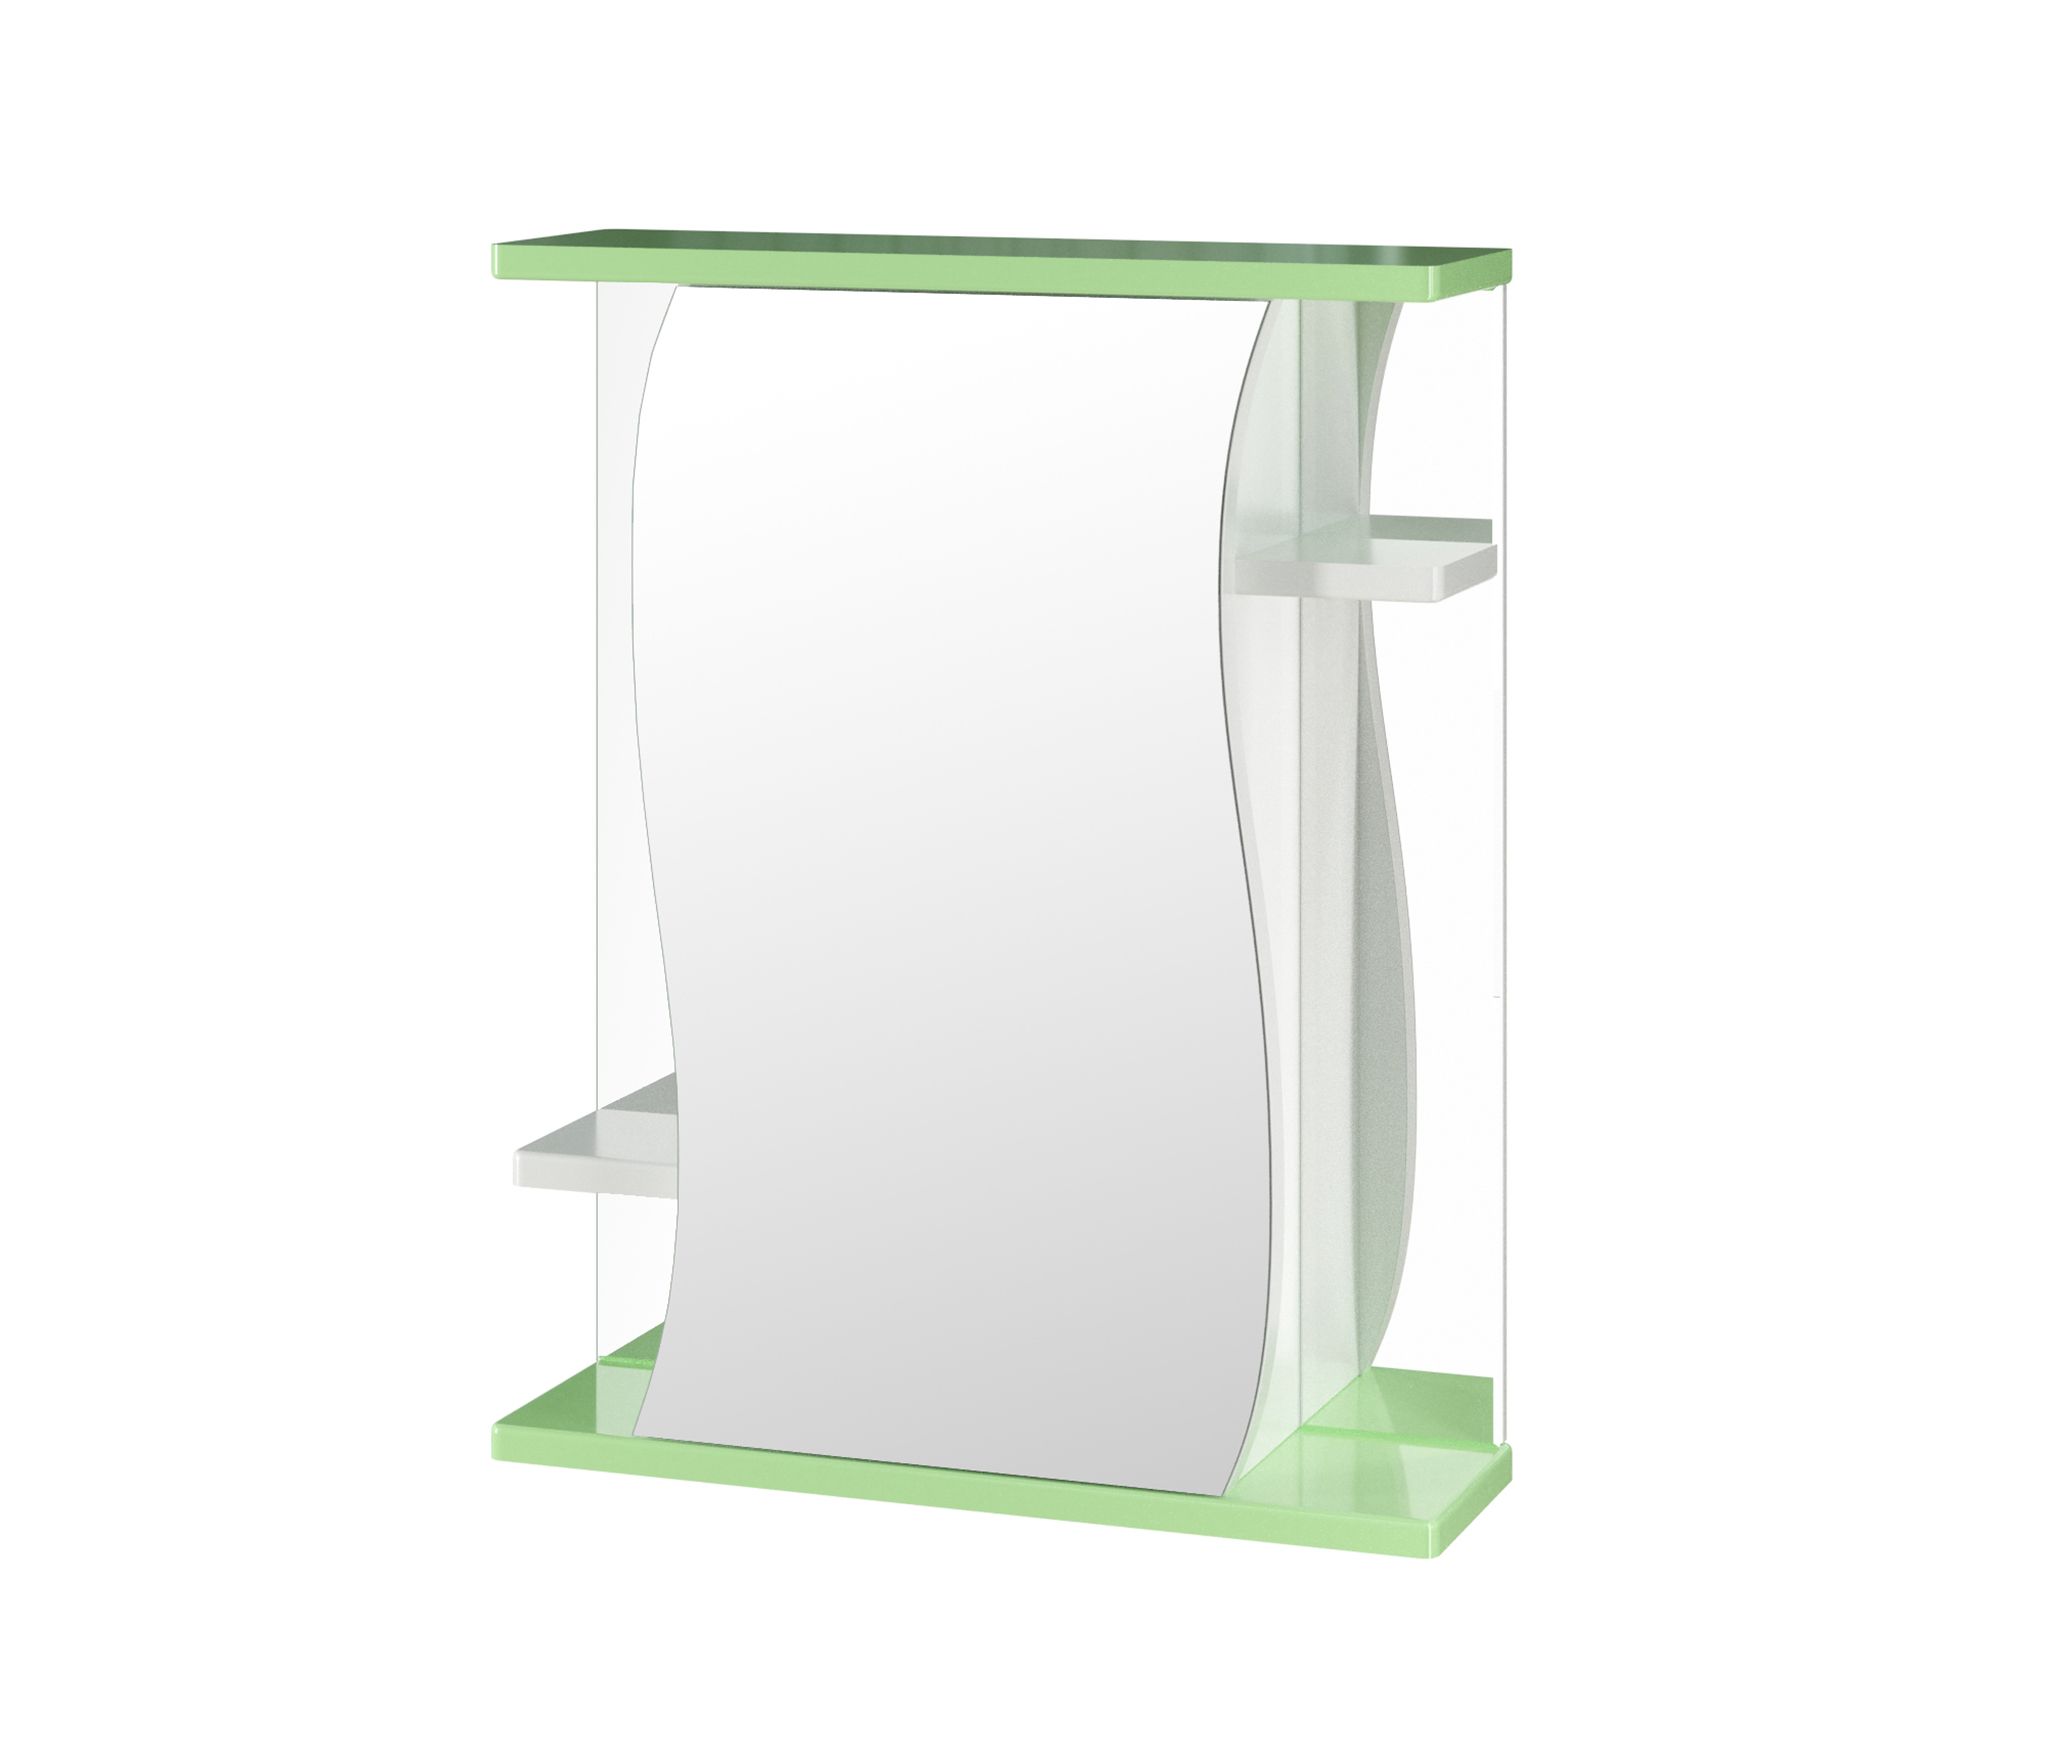 Зеркало-шкаф навесной без подсветки MIXLINE Венеция-60 зеленый (525921)